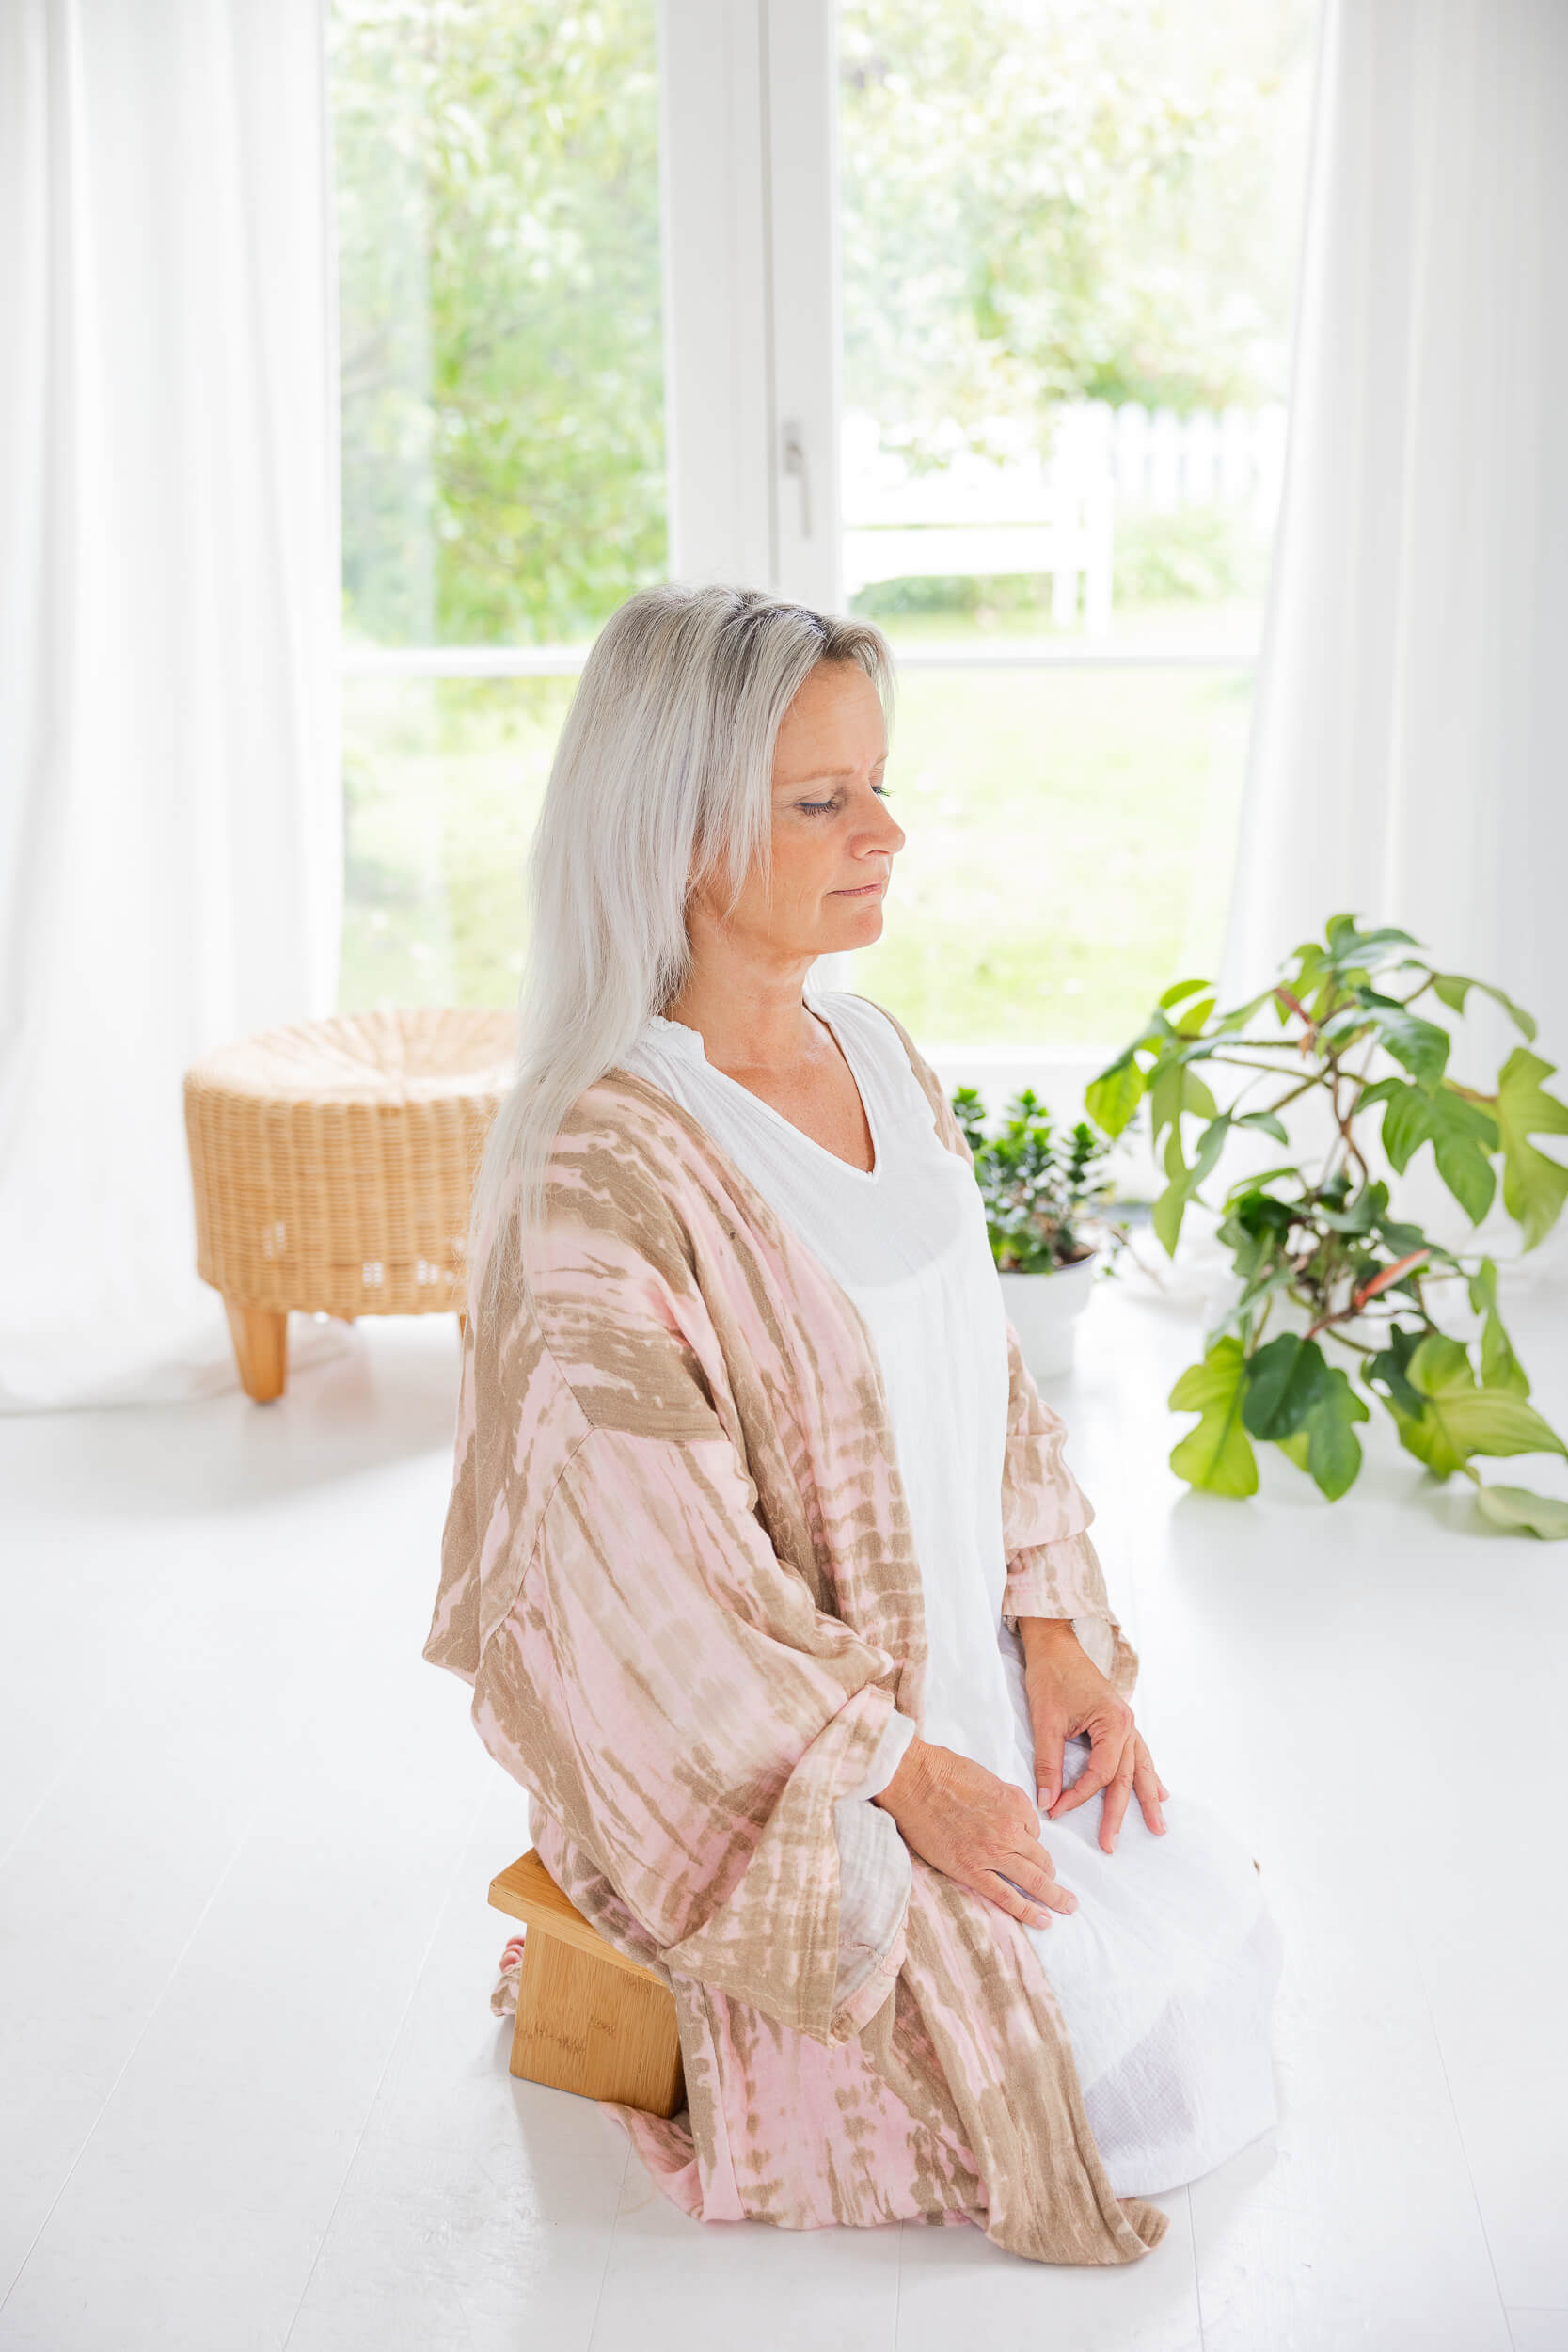 meditation odense - meditation fyn - meditation online - meditation Skype - gratis meditation - lær at meditere fyn - lær at meditere odense - lær at meditere online